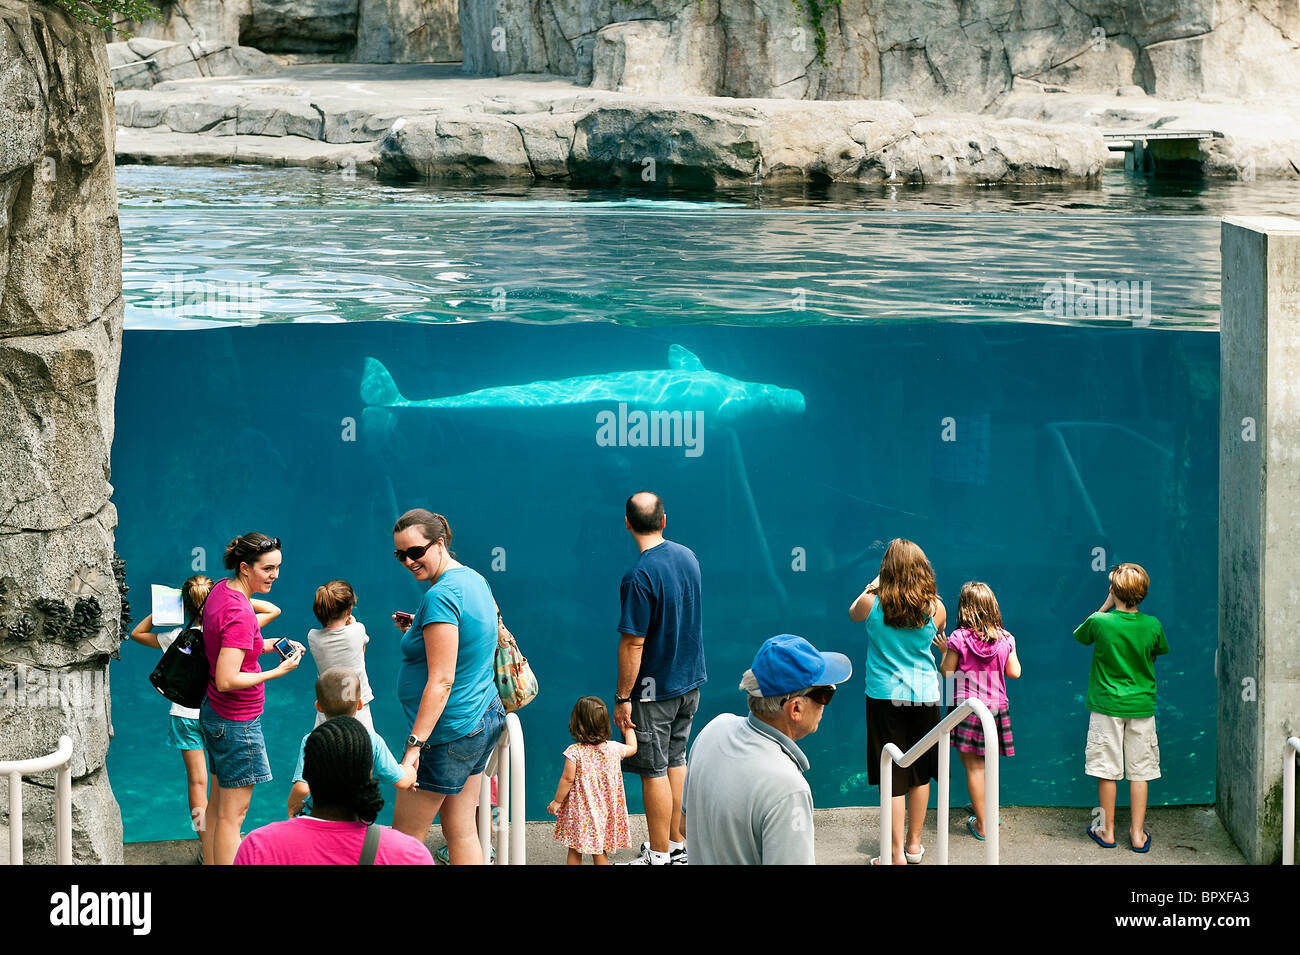 Beluga whale, Mystic Aquarium, Connecticut, USA Stock Photo